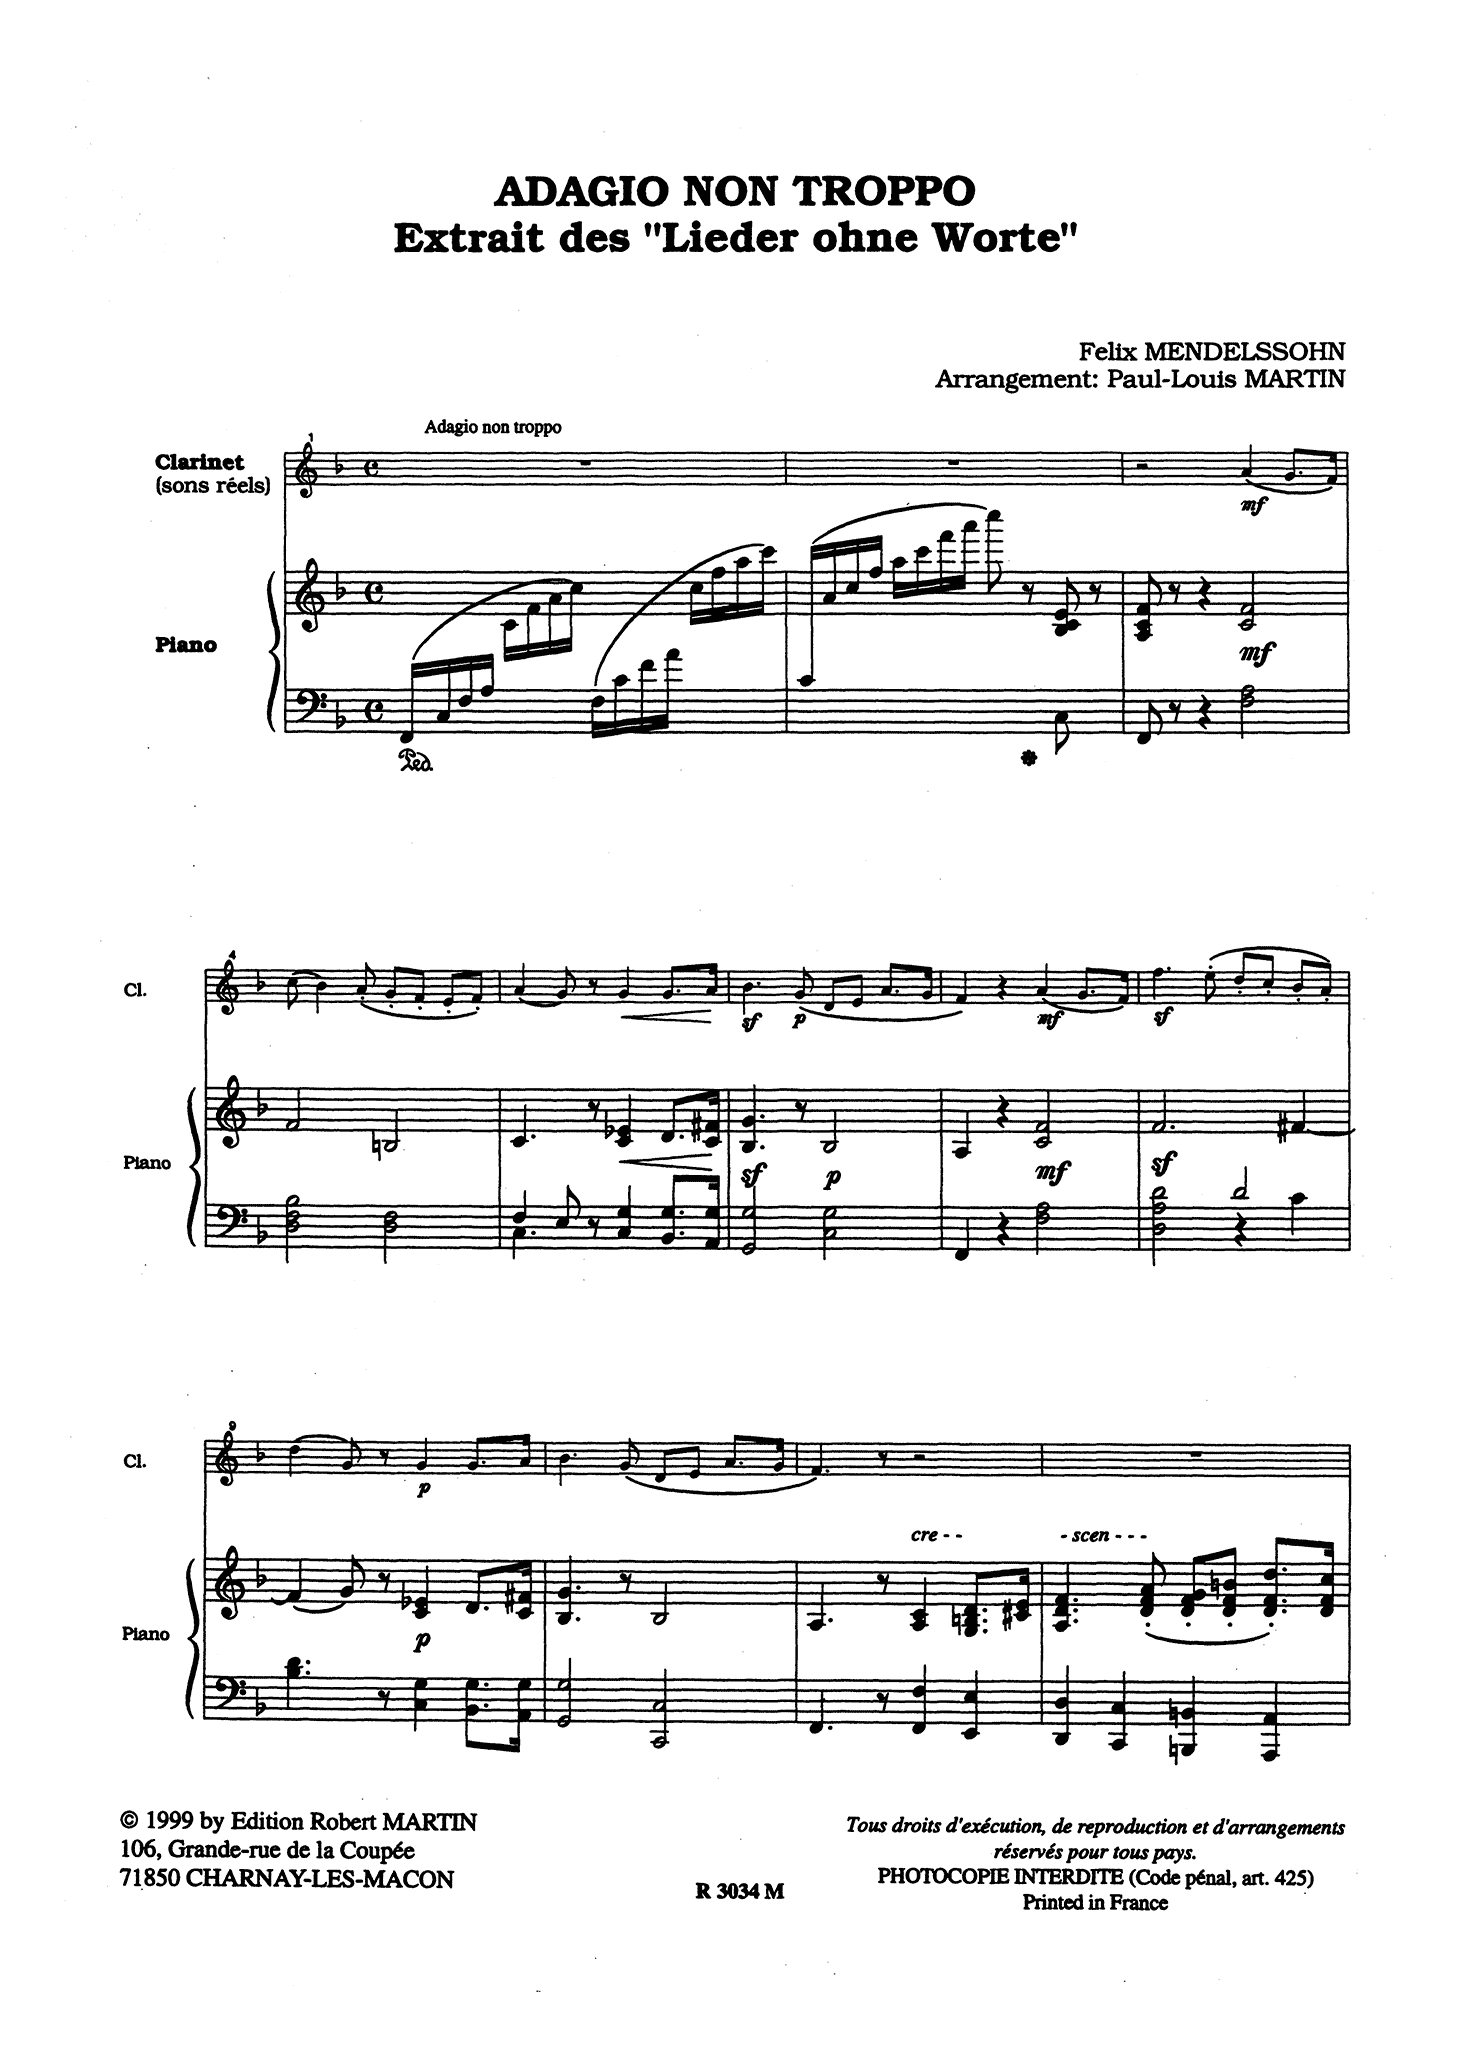 Adagio non troppo, from Lieder ohne Worte, Book 2, Op. 30 No. 3 clarinet piano arrangement score